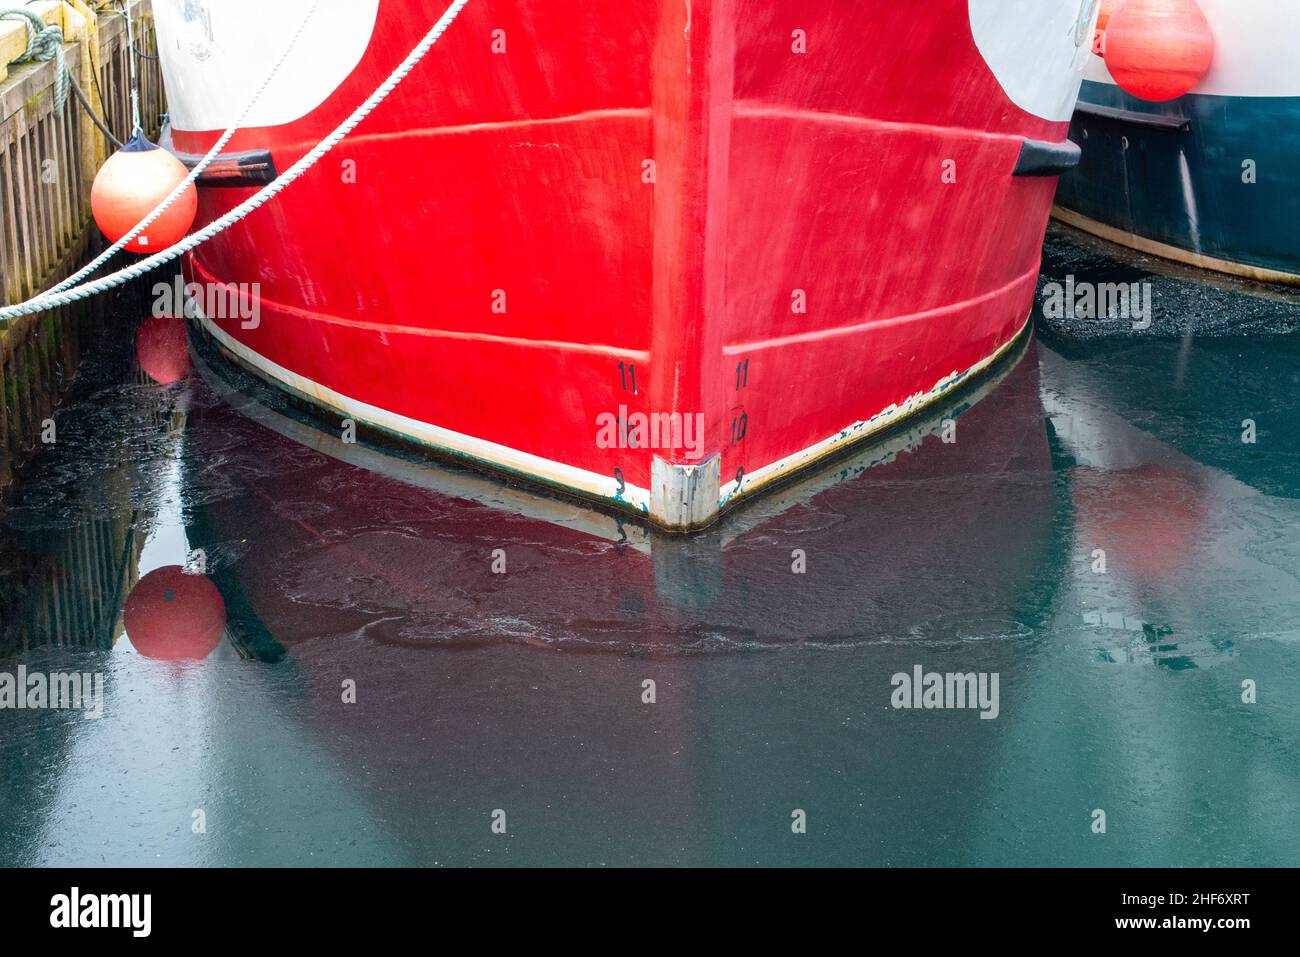 Ein leuchtendes rotes Metallschiff mit schwarzen und weißen Markierungen für die Wasserlinie oder Ladereihen am Rumpf des Schiffes. Das Messgerät hat die Nummern 11,10 und 9. Stockfoto